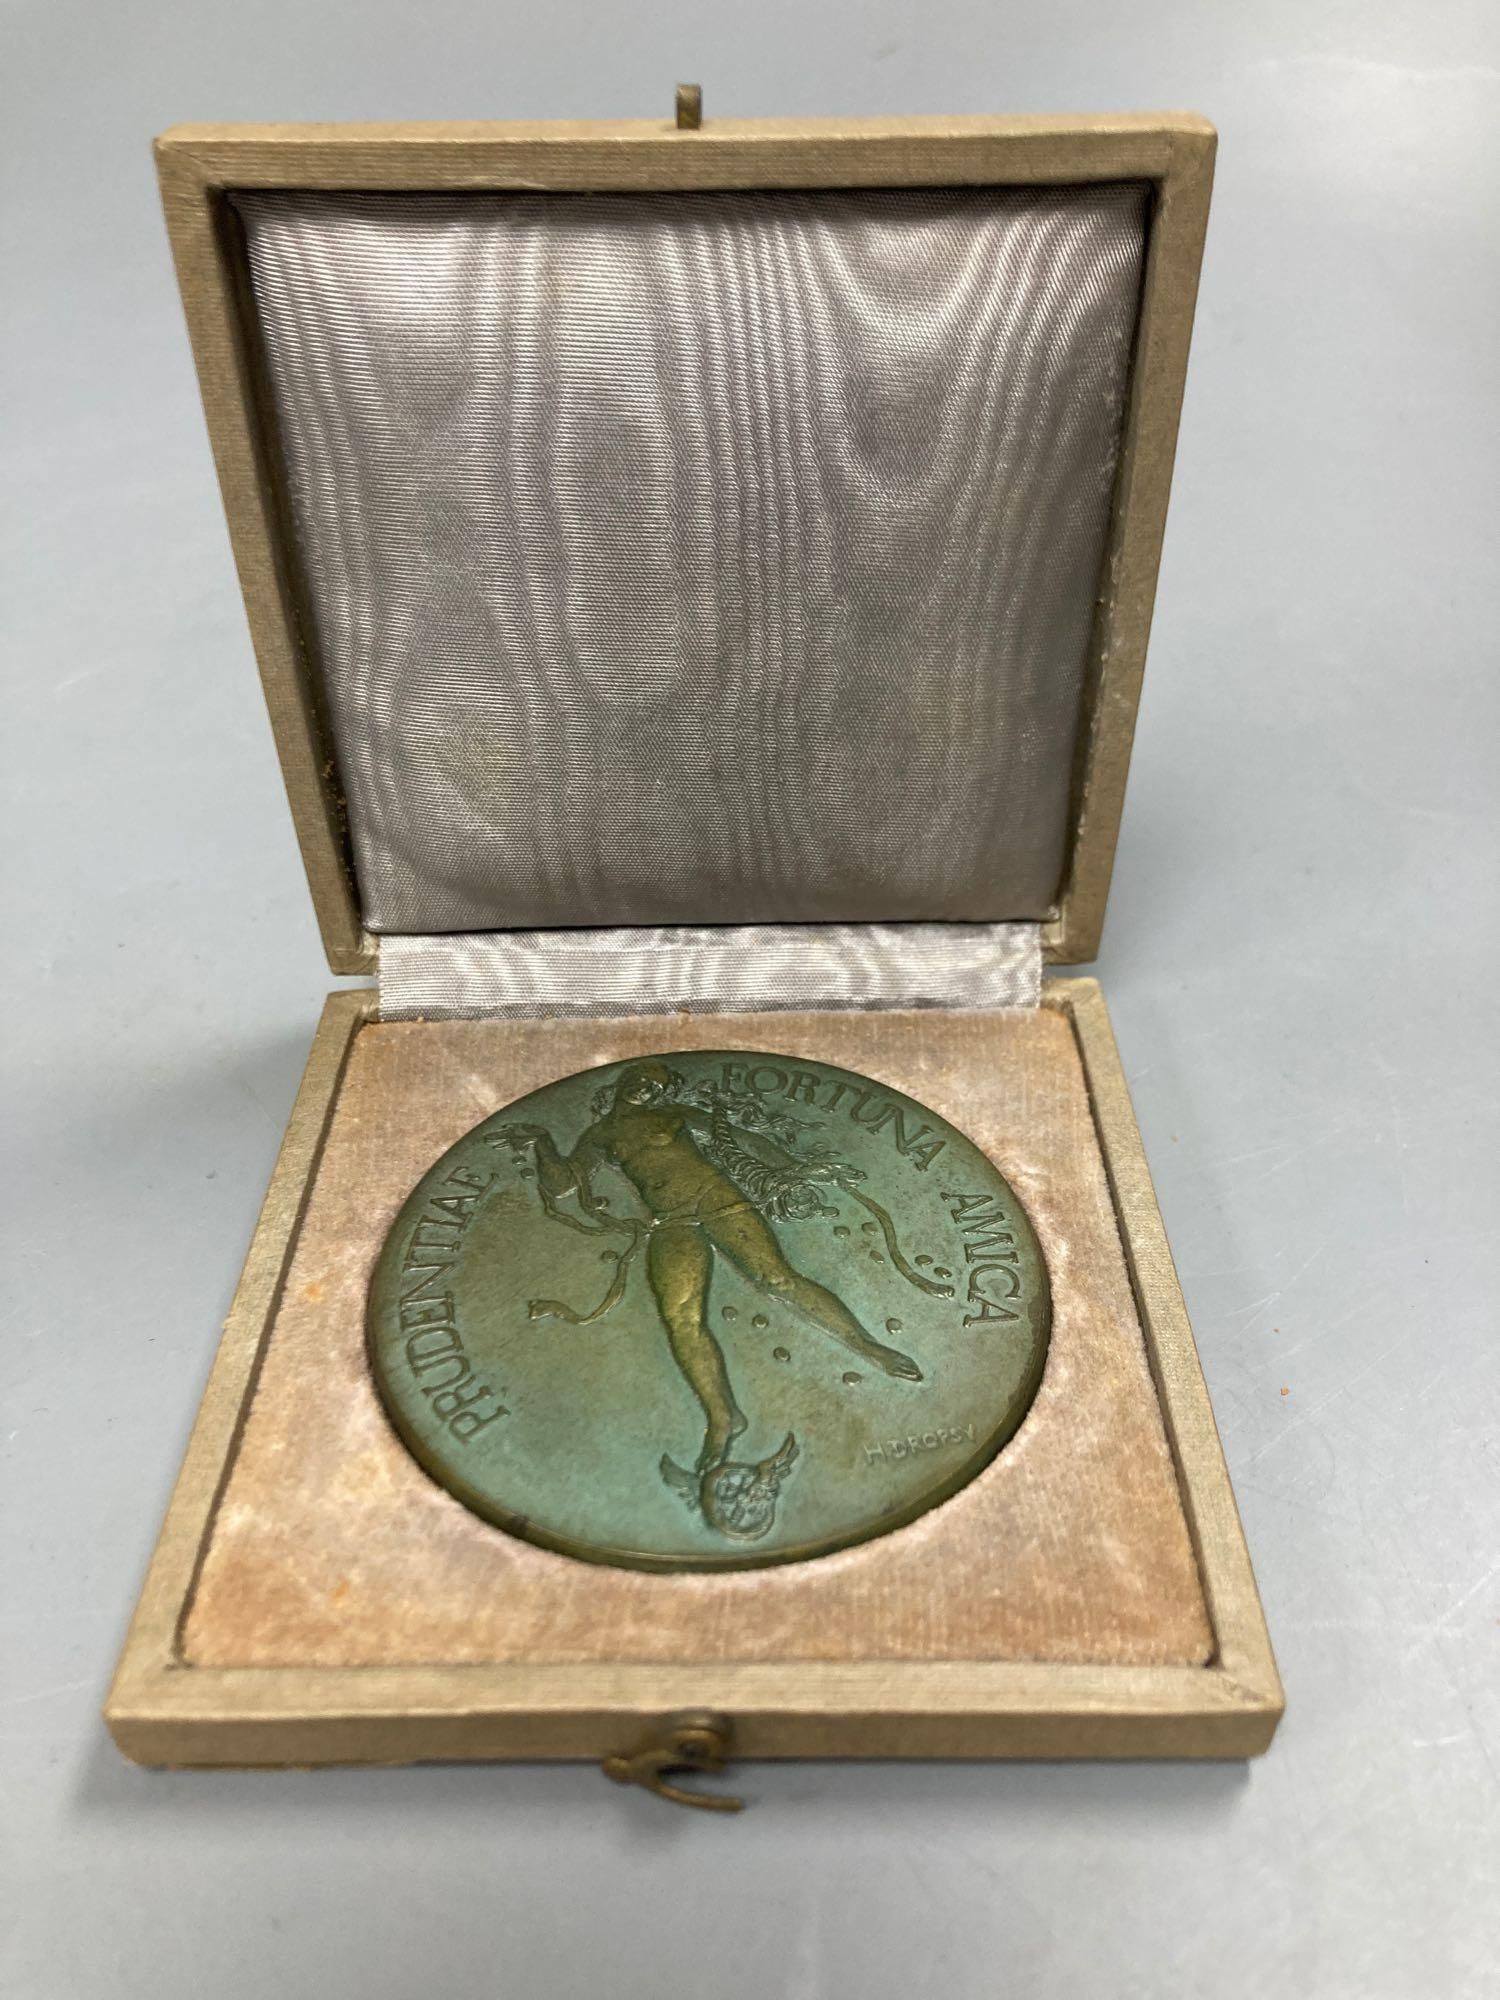 Henri Dropsy designed bronze medal 1959, in presentation case